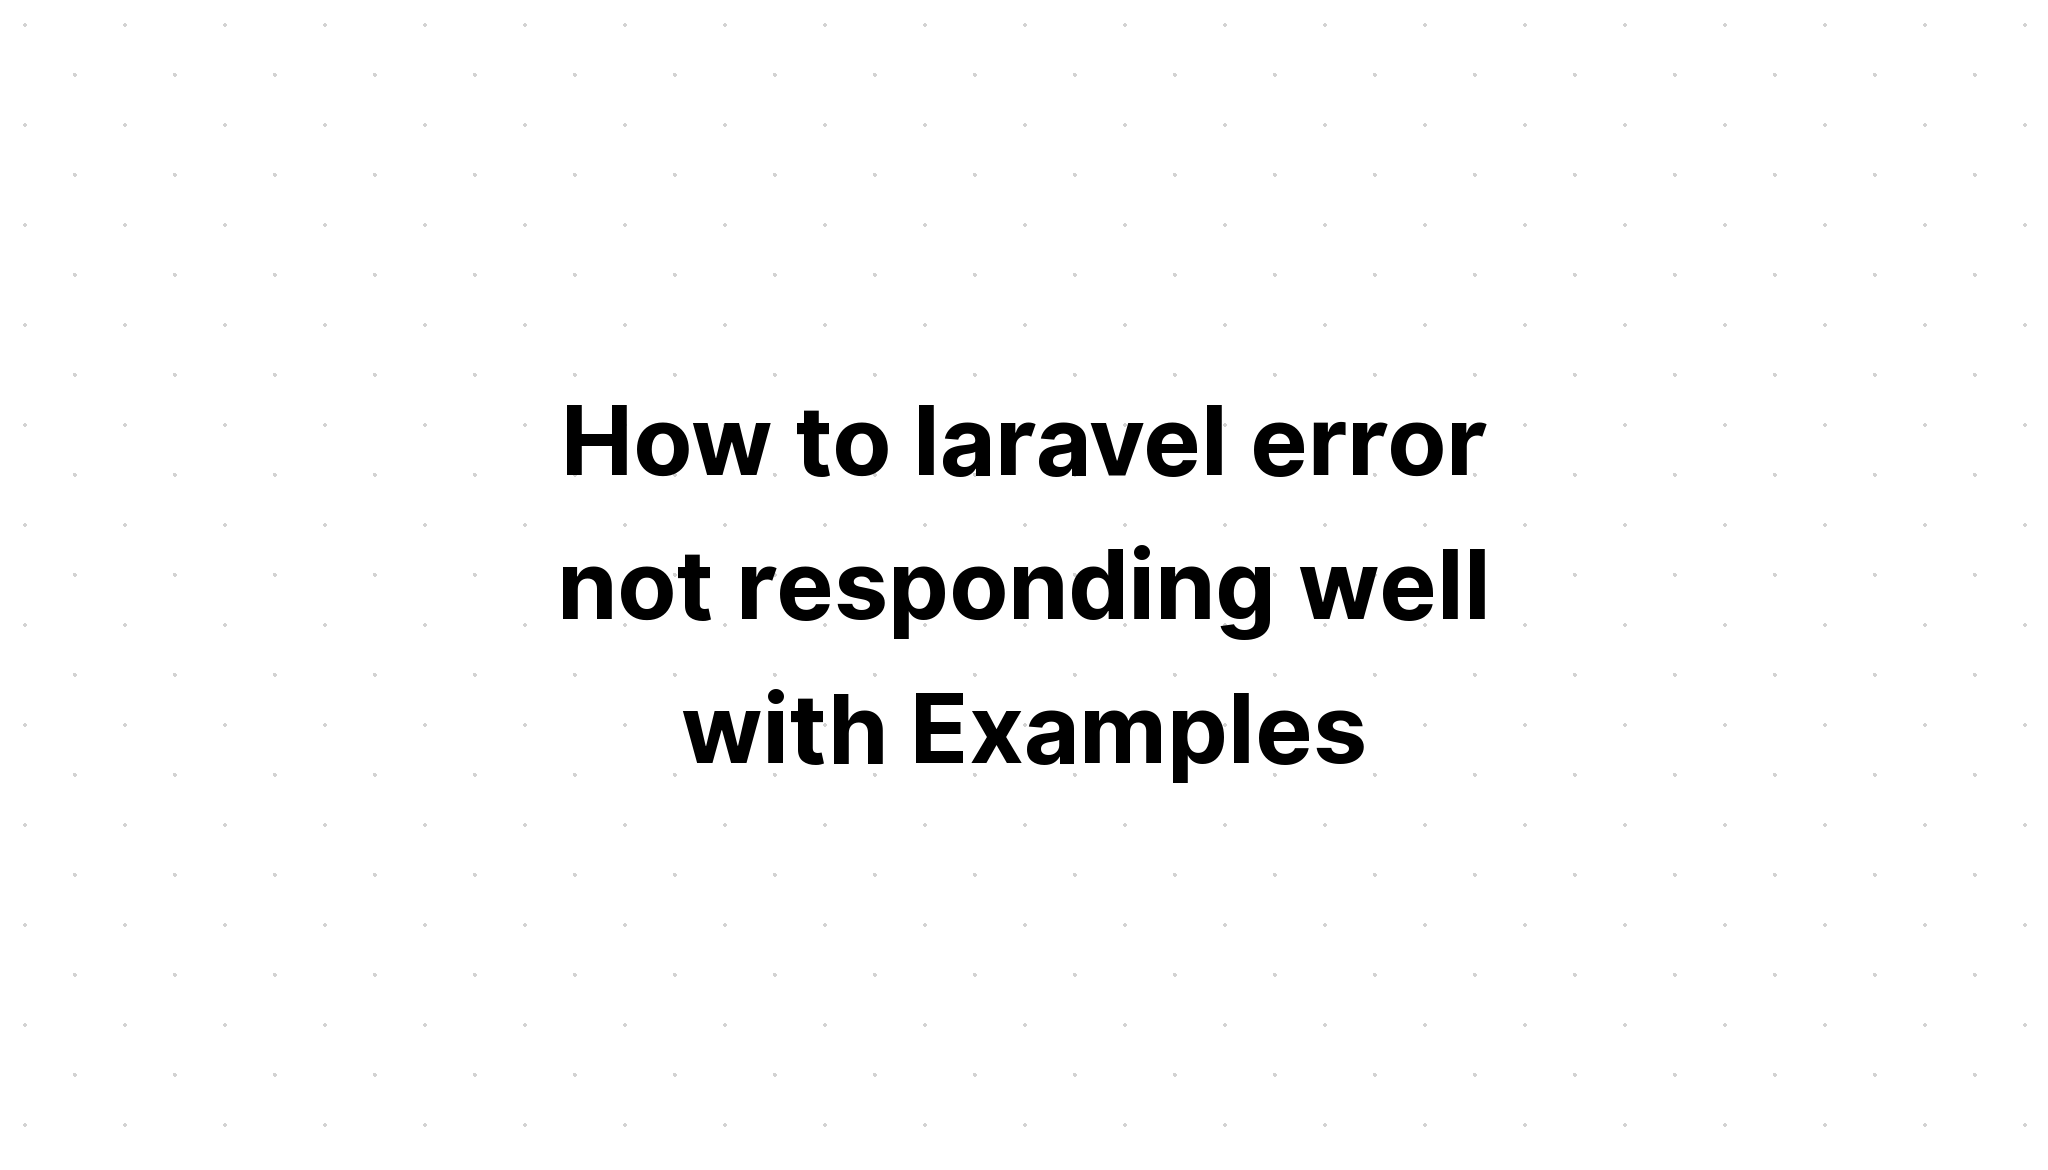 Cách khắc phục lỗi laravel không phản hồi tốt với Ví dụ